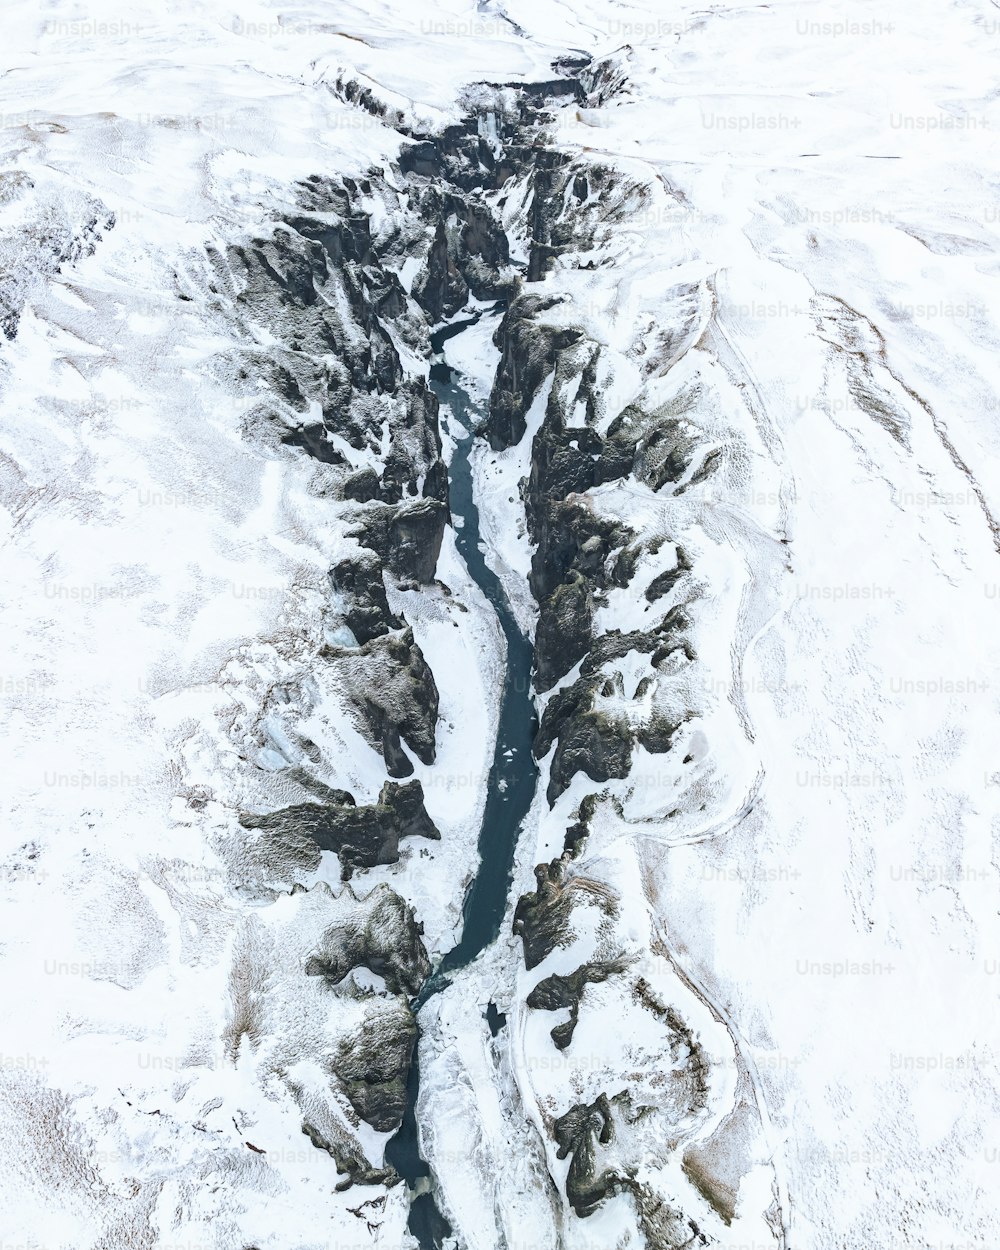 Una vista aérea de un río que atraviesa un paisaje cubierto de nieve